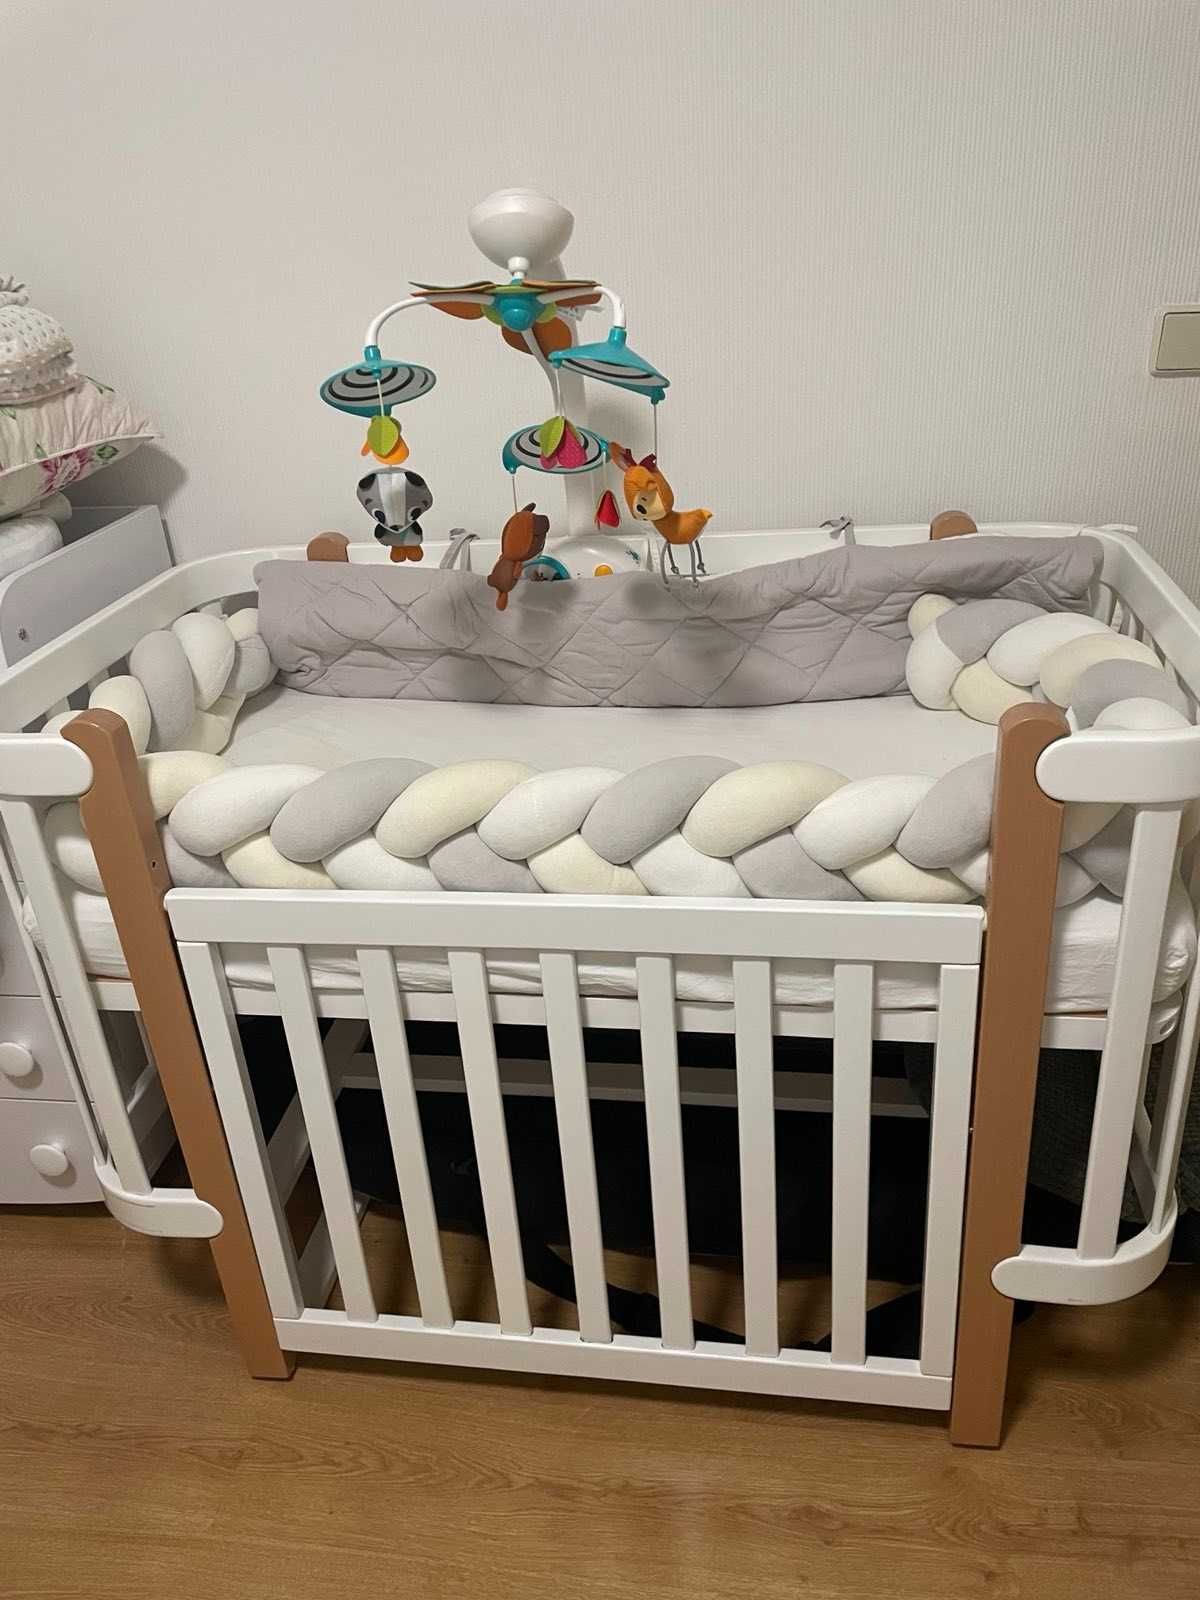 Кроватка дитяча нова з матрацем, м.Дніпро,  вартість 7500,0грн.